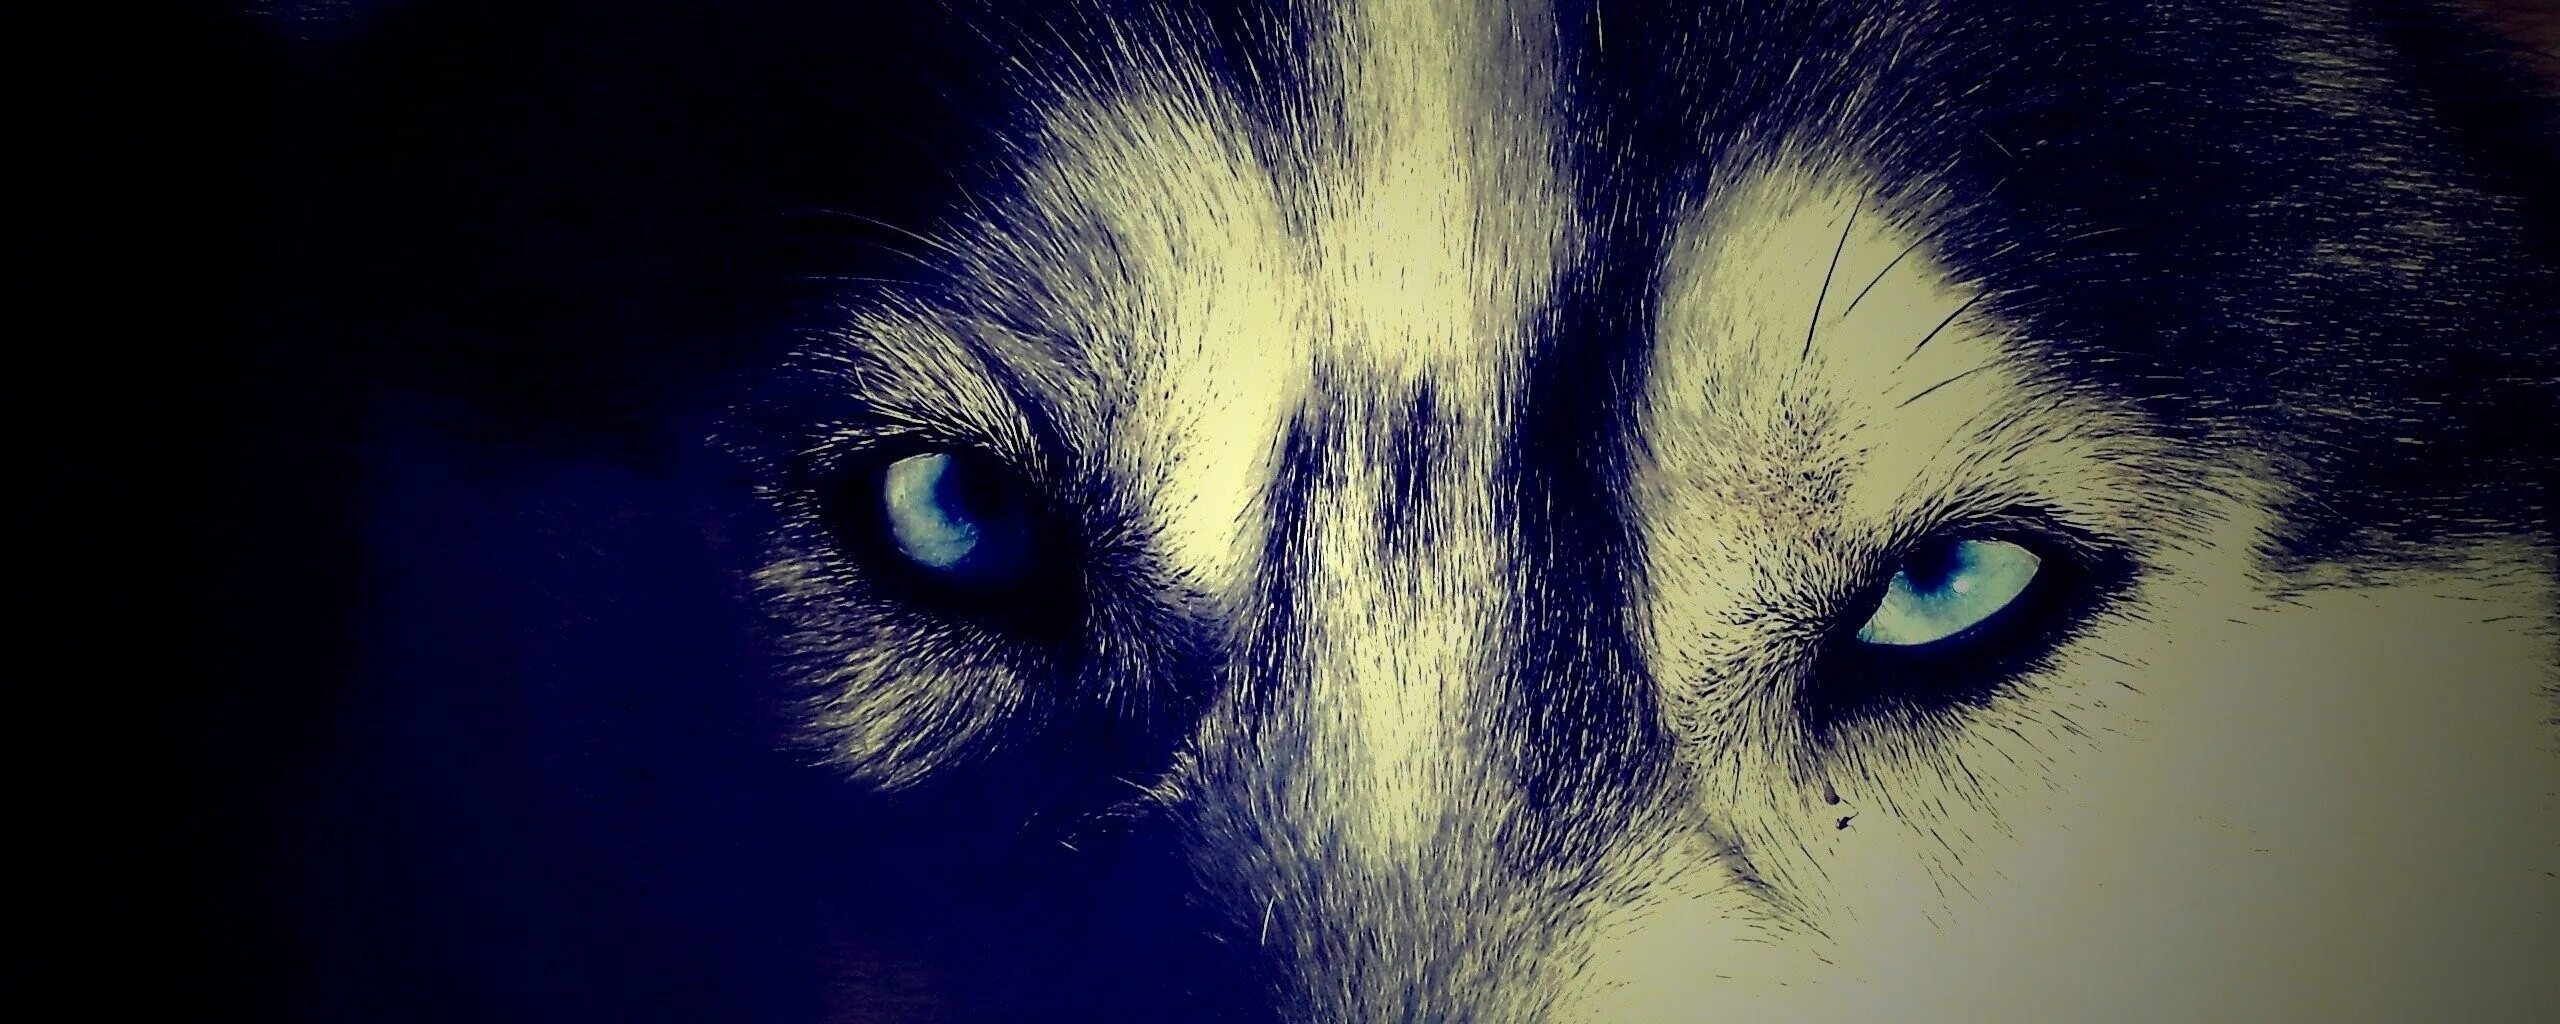 Волк светятся глаза. Глаза волка в темноте. Глаз волка. Волчьи глаза у человека. Взгляд волка у человека.